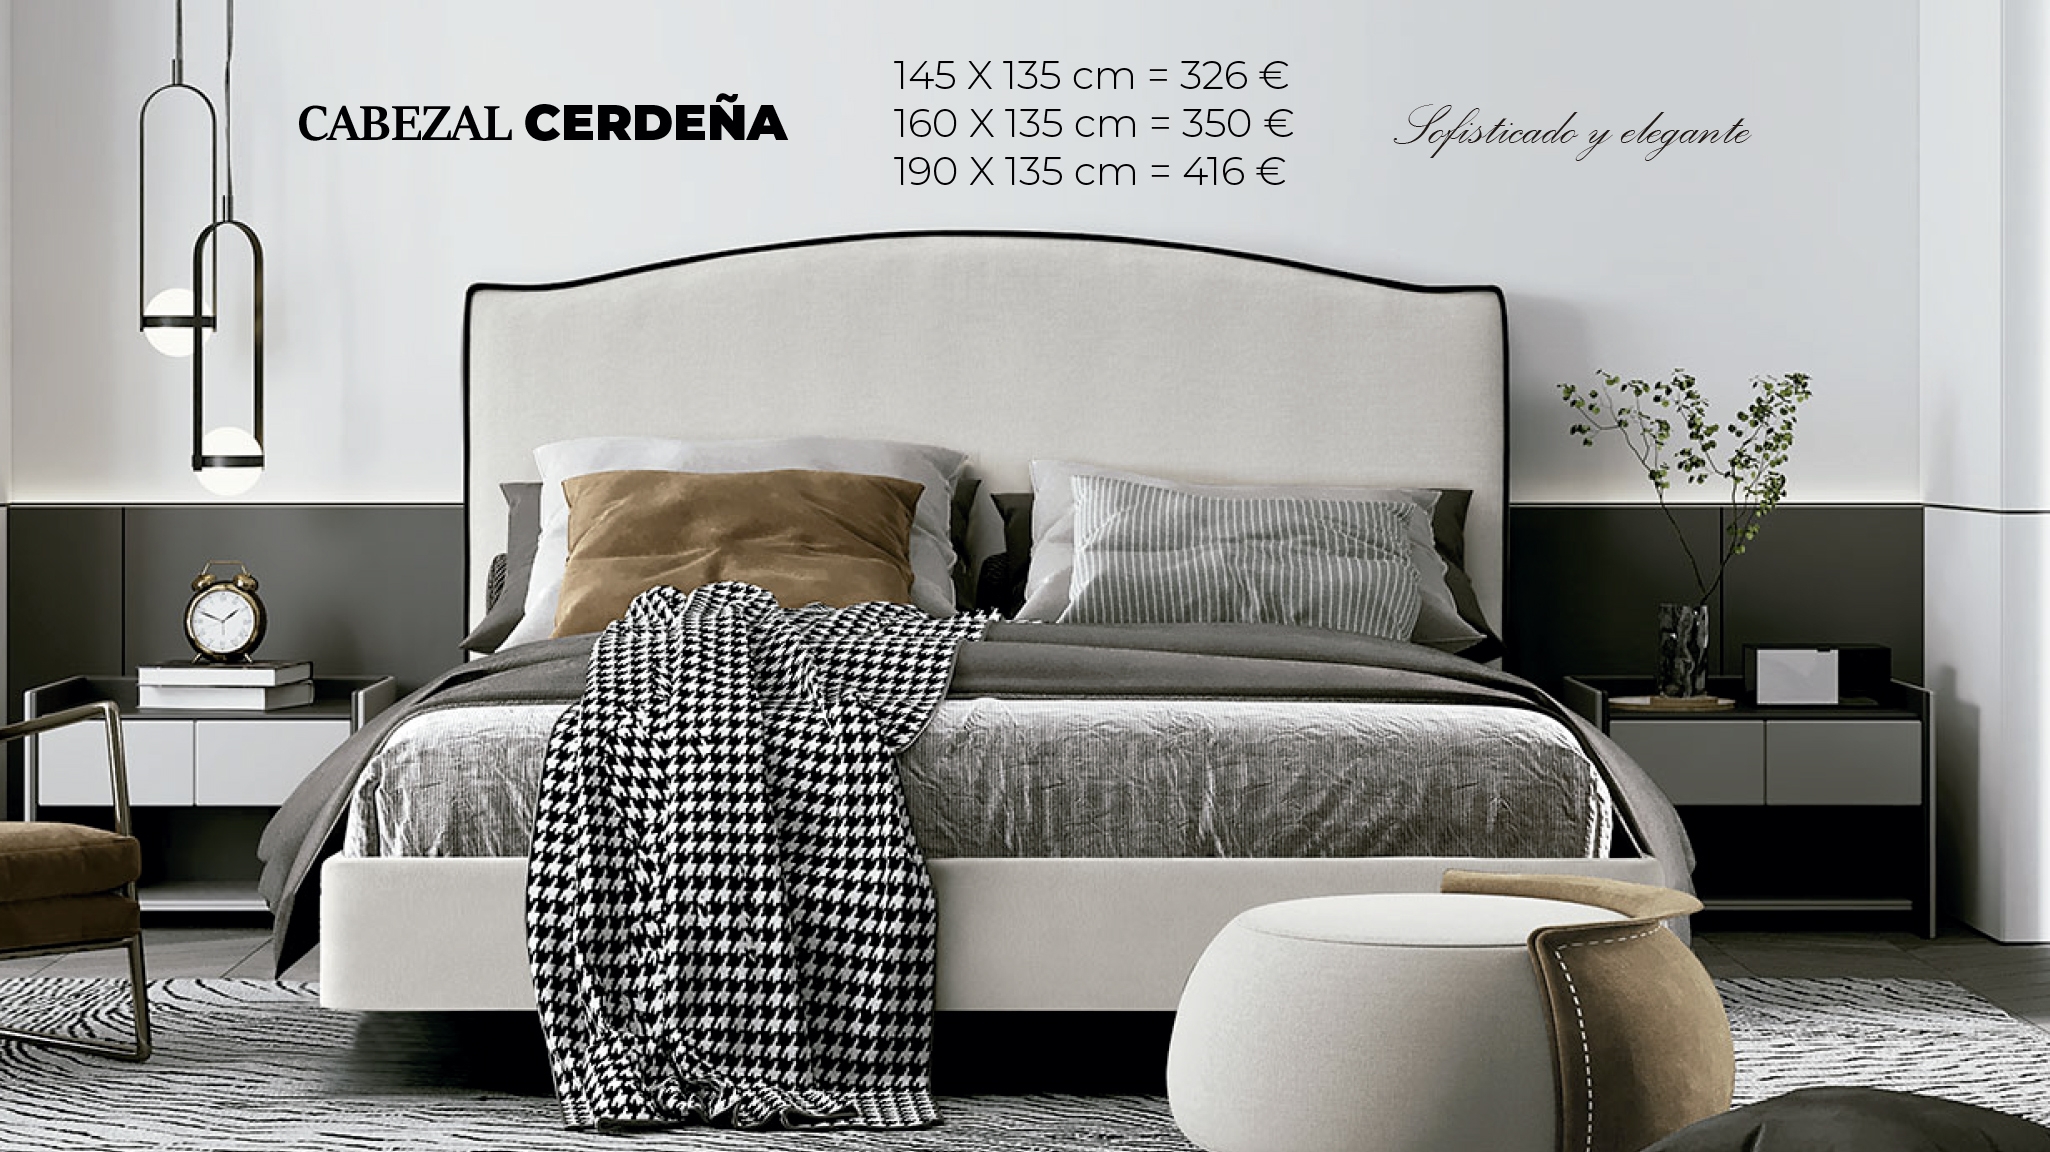 Cabezal Cerdeña 145 x 135 cm - 326 €